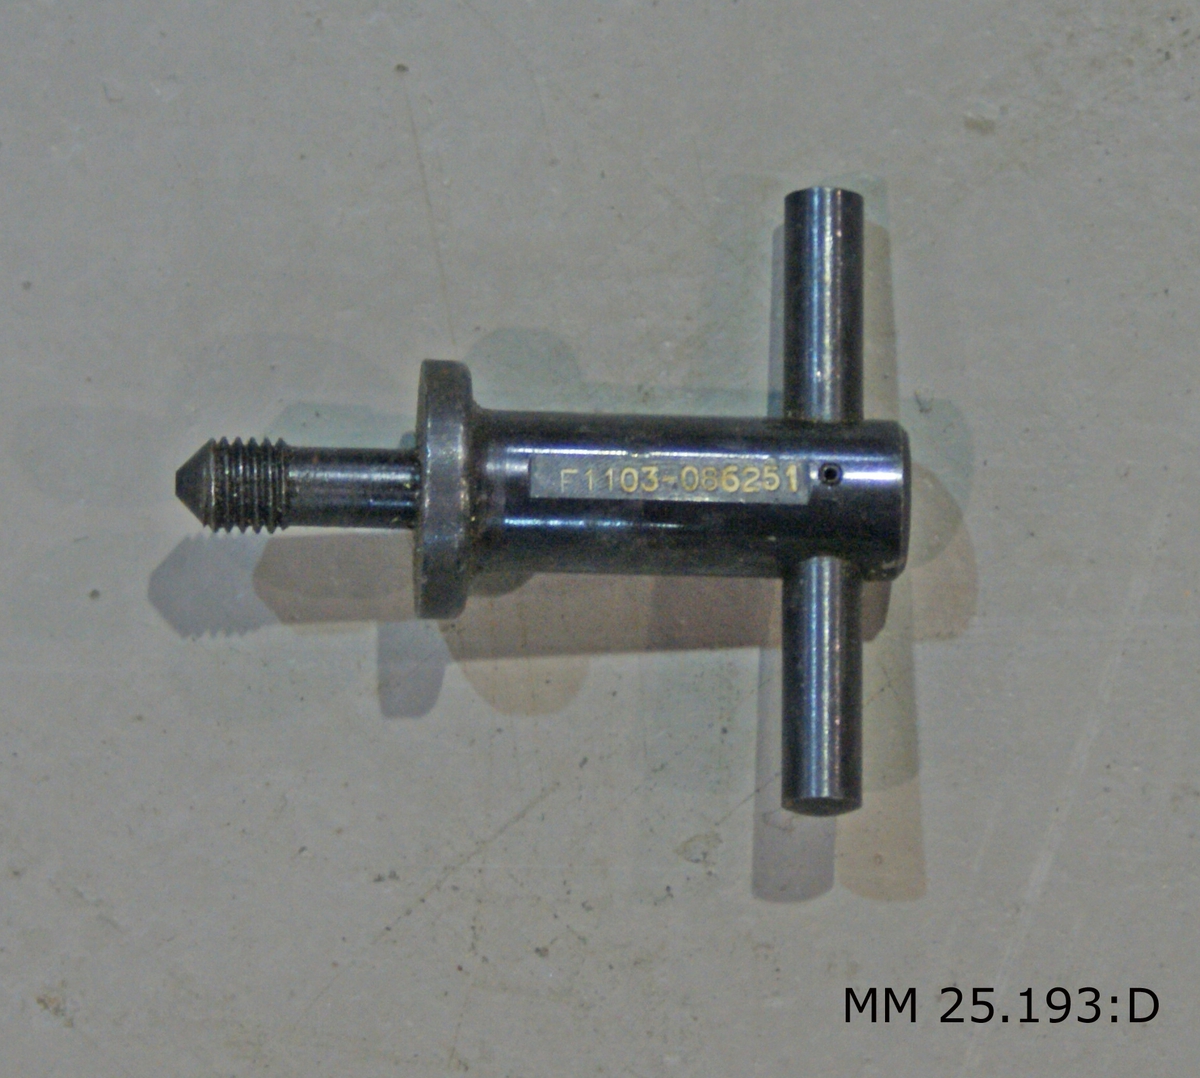 Verktygssatsen ligger förpackad i en ett tygstycke i grovt grågrönt tyg som kan rullas och bindas ihop med hjälp av läderremmar. Märkning på tygrullen: "GbK Art" och därunder tre kronor. Allt tryckt i rött.
Följande delar ingår i verktygssatsen:
Sexkantnyckel 6 mm M6133-306010-9
Sexkantnyckel 8 mm M6133-308010-7
Sexkantnyckel 10 mm M6133-310010-3
Sexkantnyckel 12 mm F1103-085931-3
Avdragare F1103-086251
Locköppnare med rem 2 st M6291-802011-2
Mätsticka för granatkastare kustartilleriet 2 st M2131-005010-1
Oljekanna M6453-800410-4
Rengörningskolv M6119-370010-9
Skiftnyckel nr 71 M6135-026000-4
Skruvmejsel 2 st M6140-508000-1/M6140-502010-6
Tång 2 st M6160-001000-1/M6168-002010-2
Viskarstång (tvådelad med gängor på mitten för montering) M6119-369010-2
Stötbottenkrats med ask